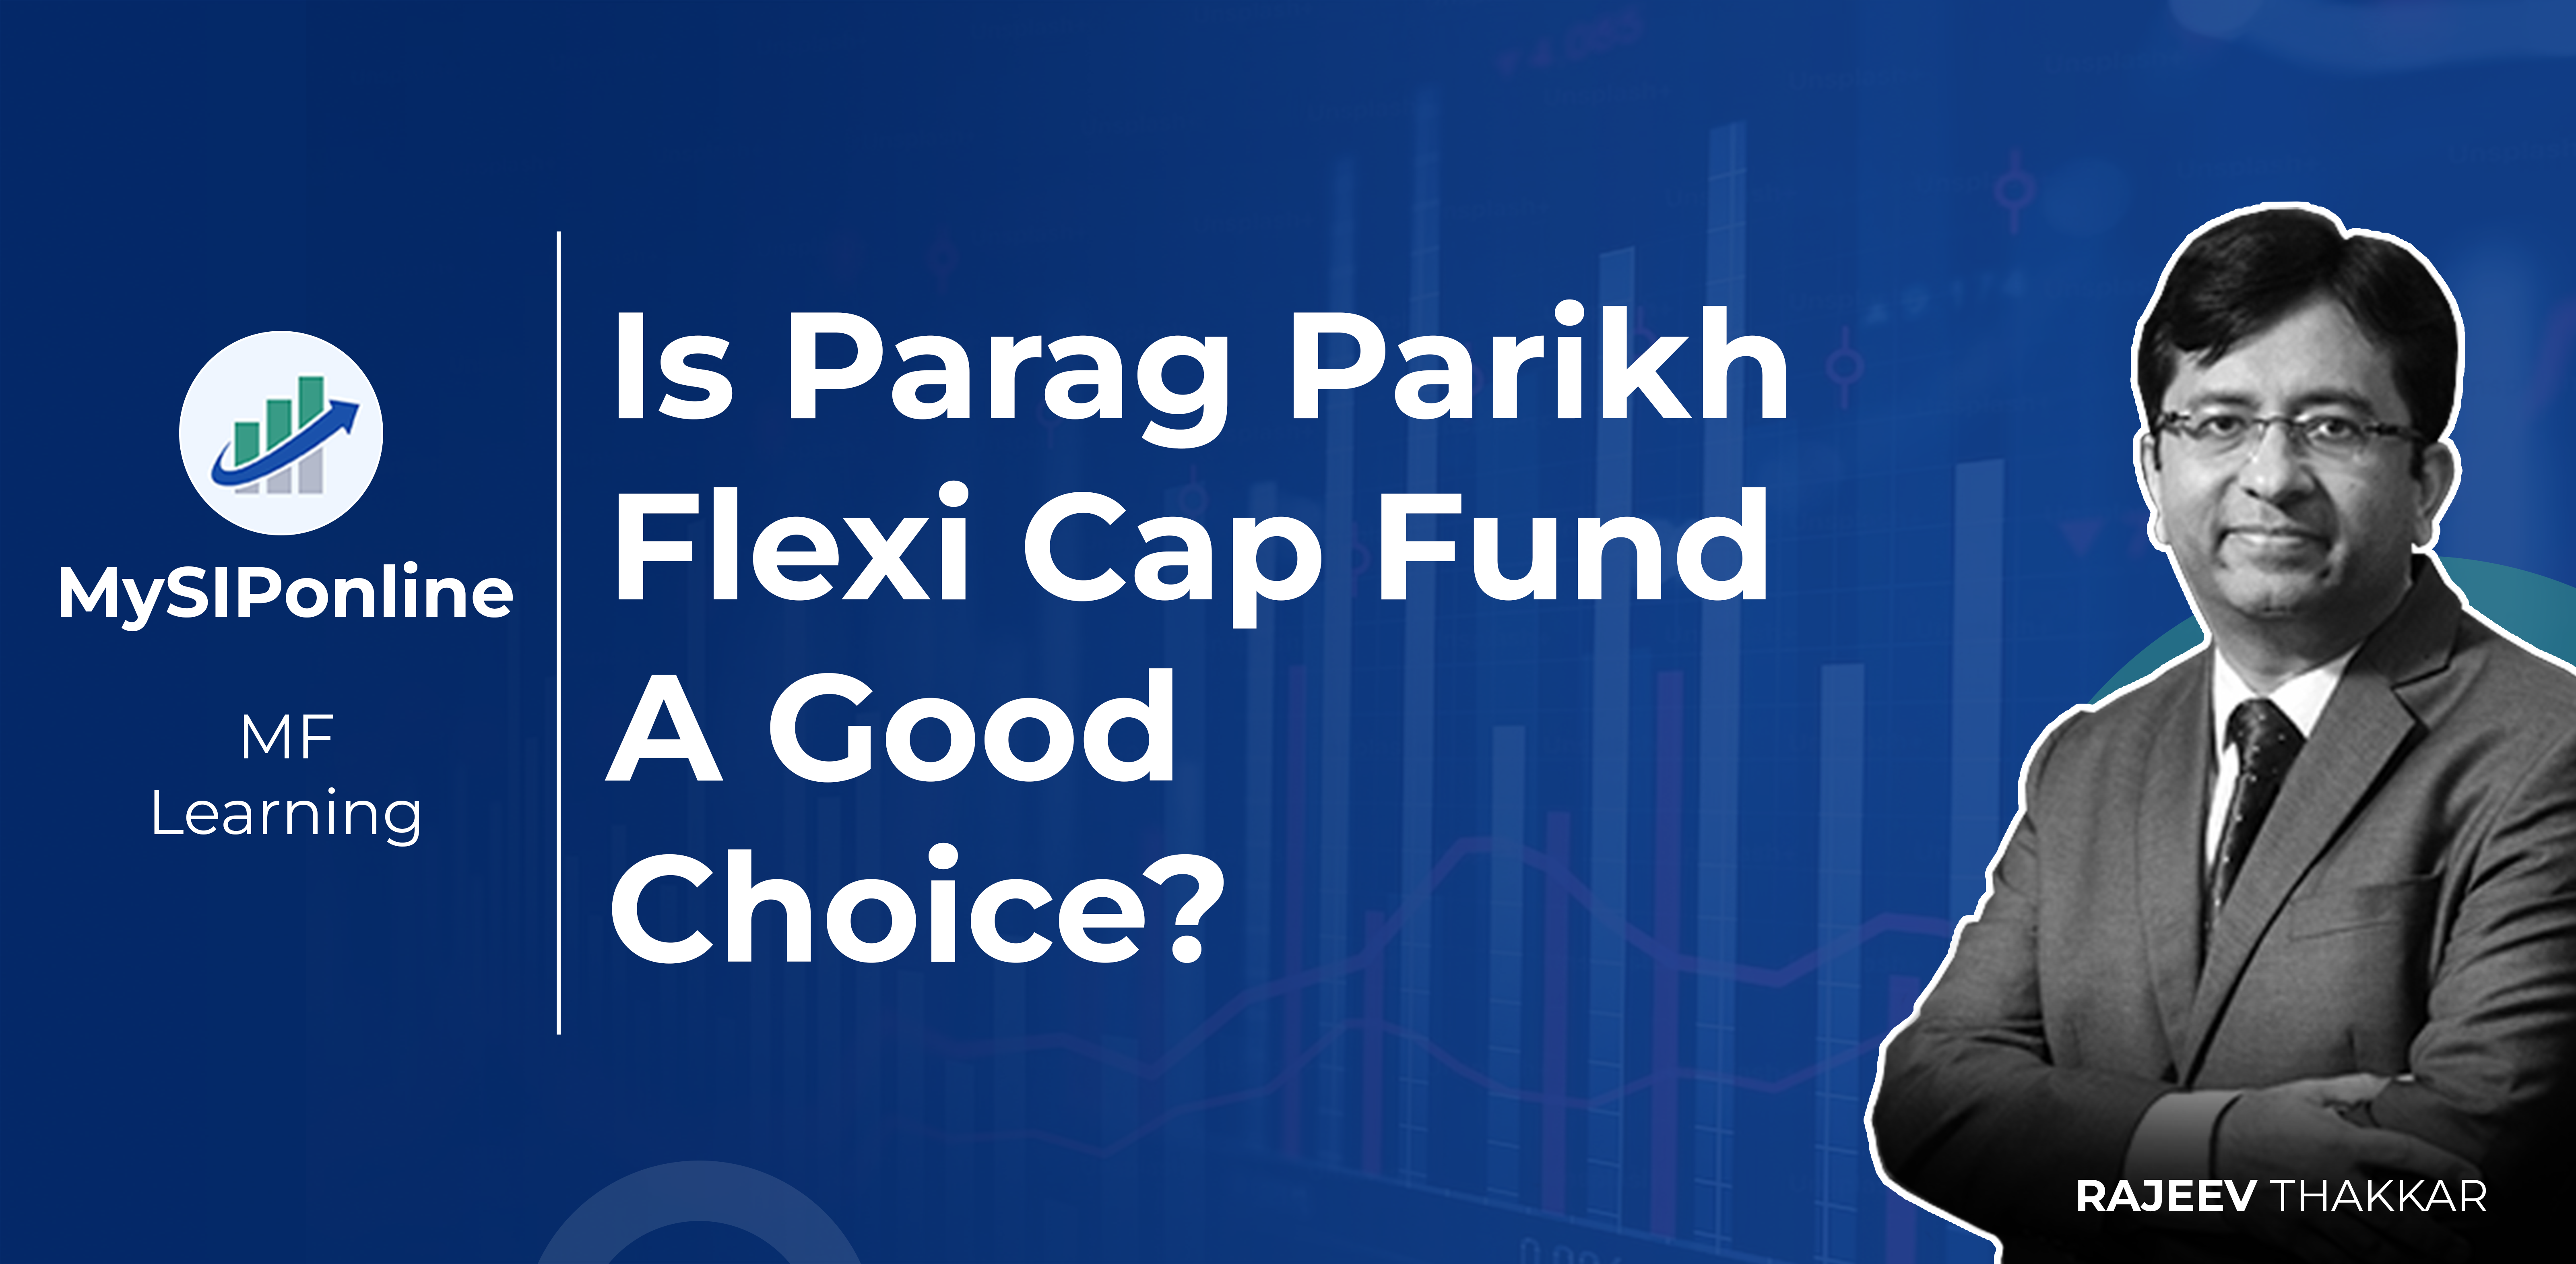 Is Parag Parikh Flexi Cap Fund a Good Choice?